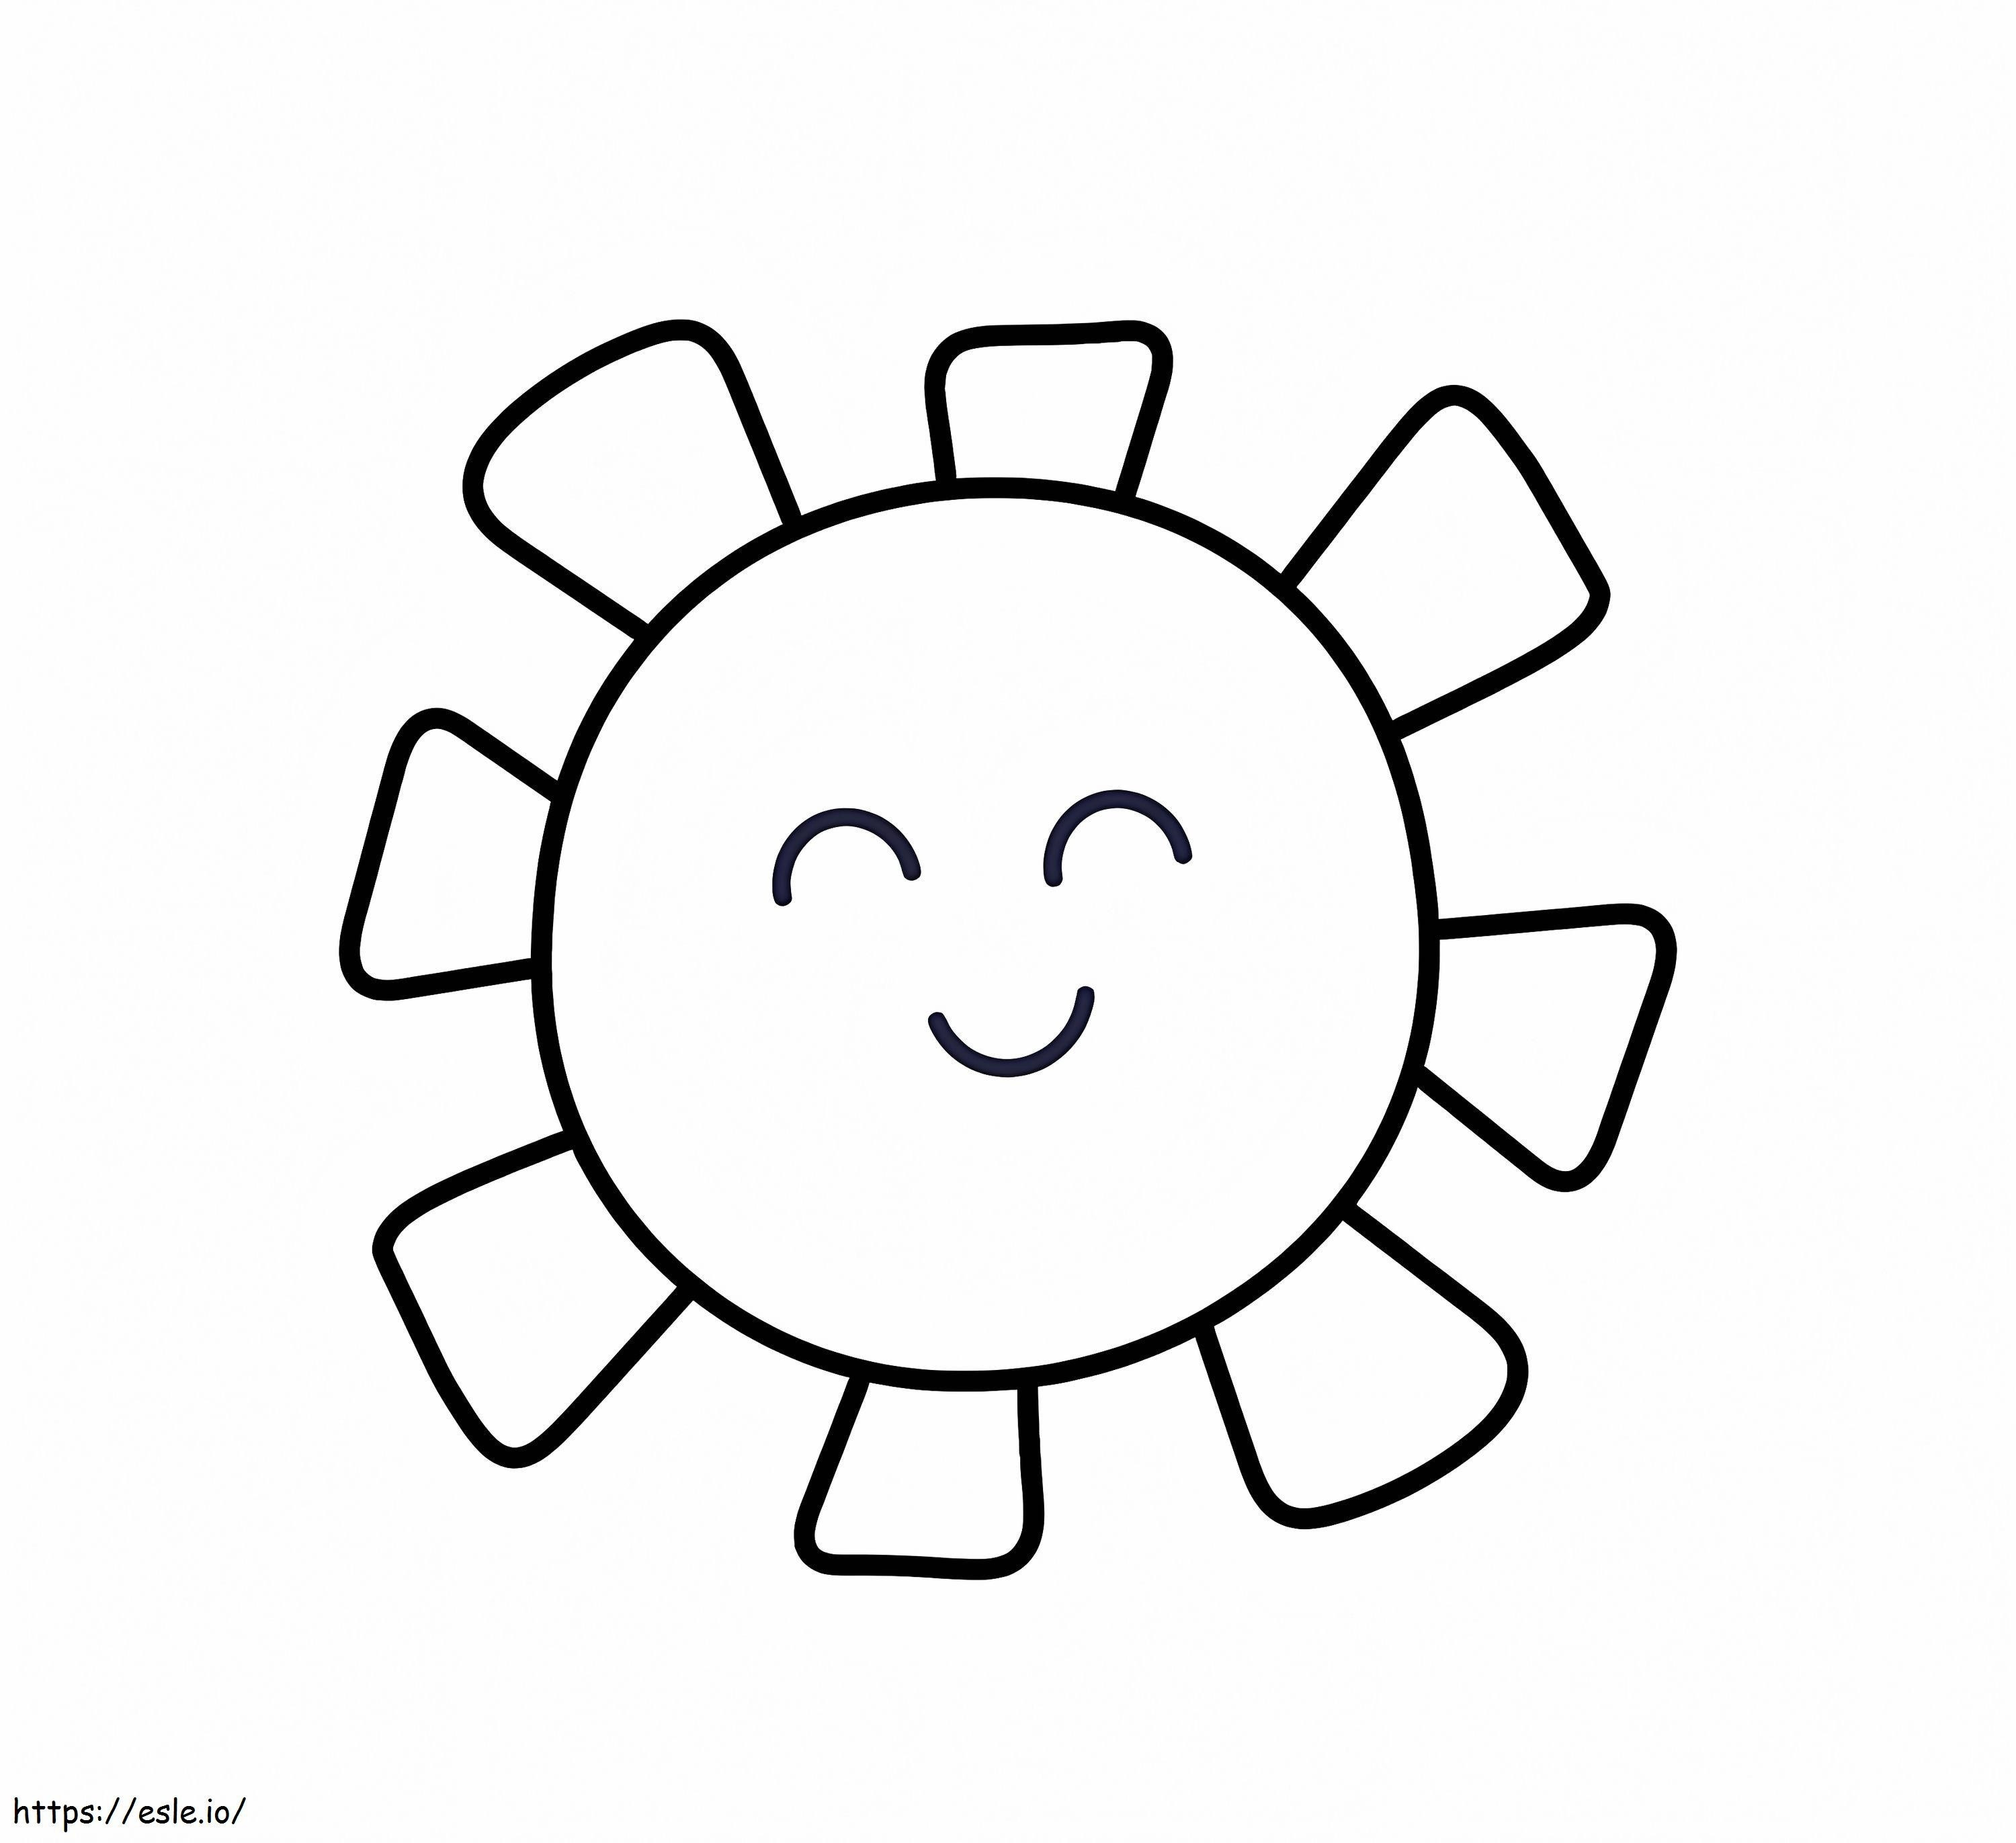 Sorriso semplice del sole da colorare